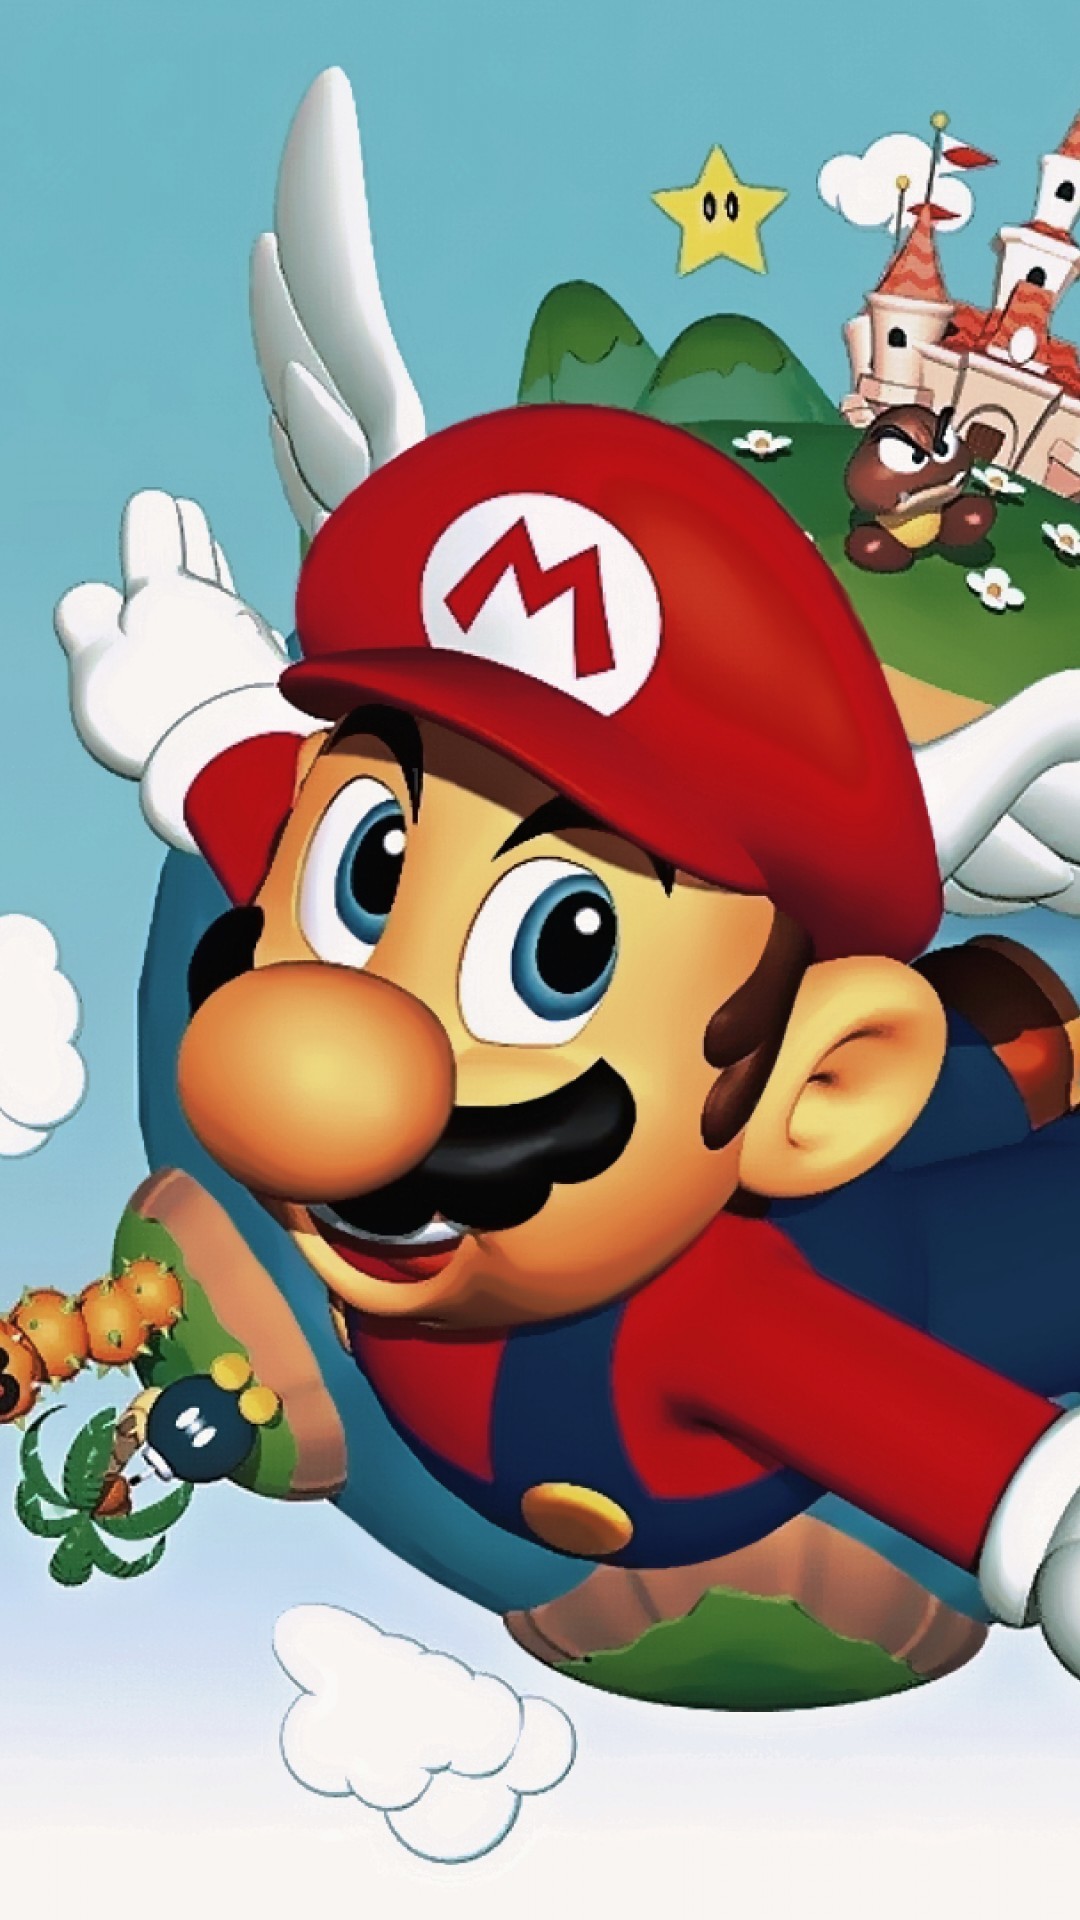 1080x1920 Super Mario 64 Quotes iPhone 6 Plus - Wallpaper .